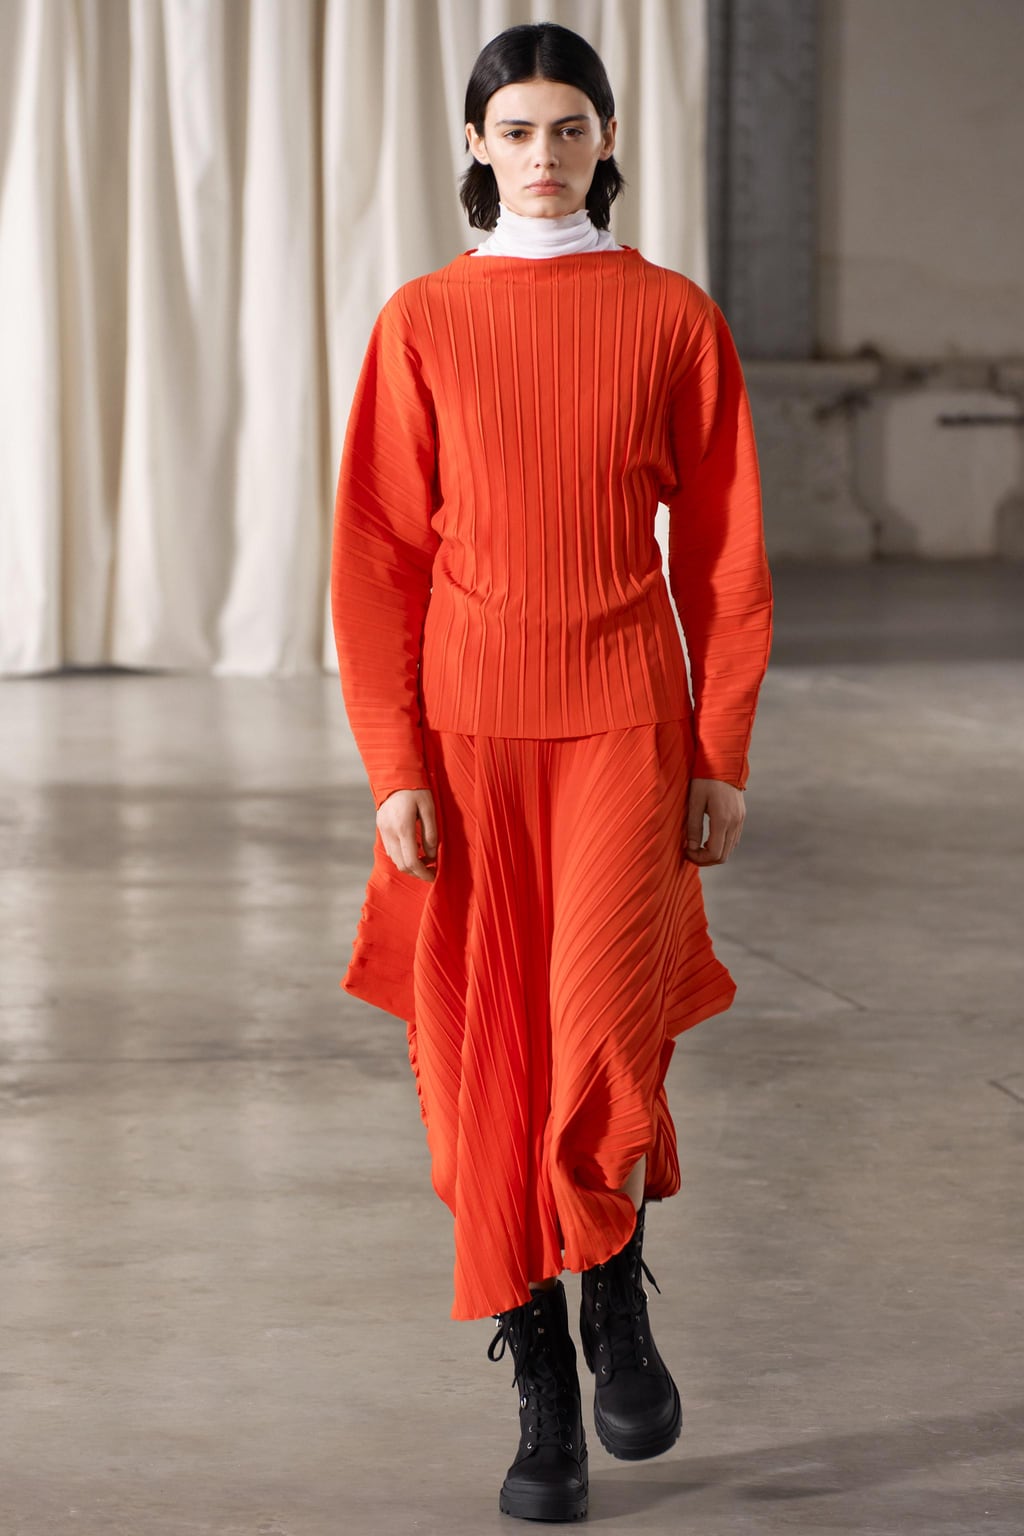 Асимметричная юбка со складками ZARA, красный апельсин юбка в готическом стиле харадзюку плиссированная юбка с завышенной талией в готическом стиле готическая юбка размера плюс размера красна